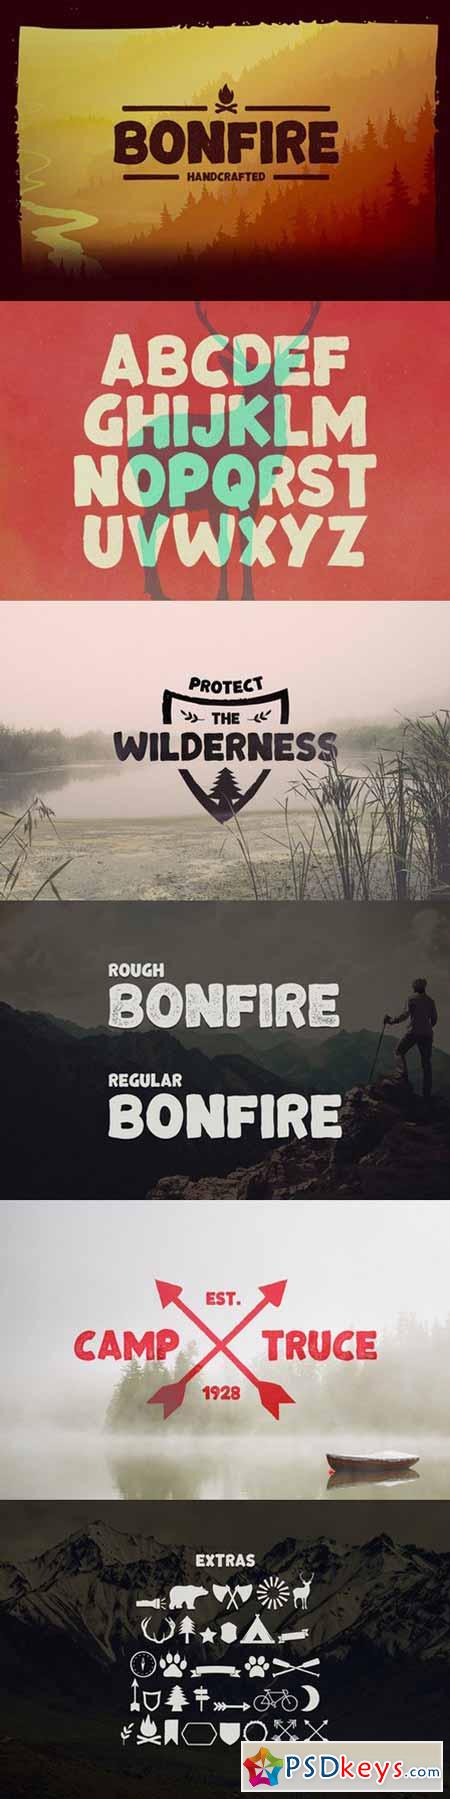 Bonfire Typeface 546231